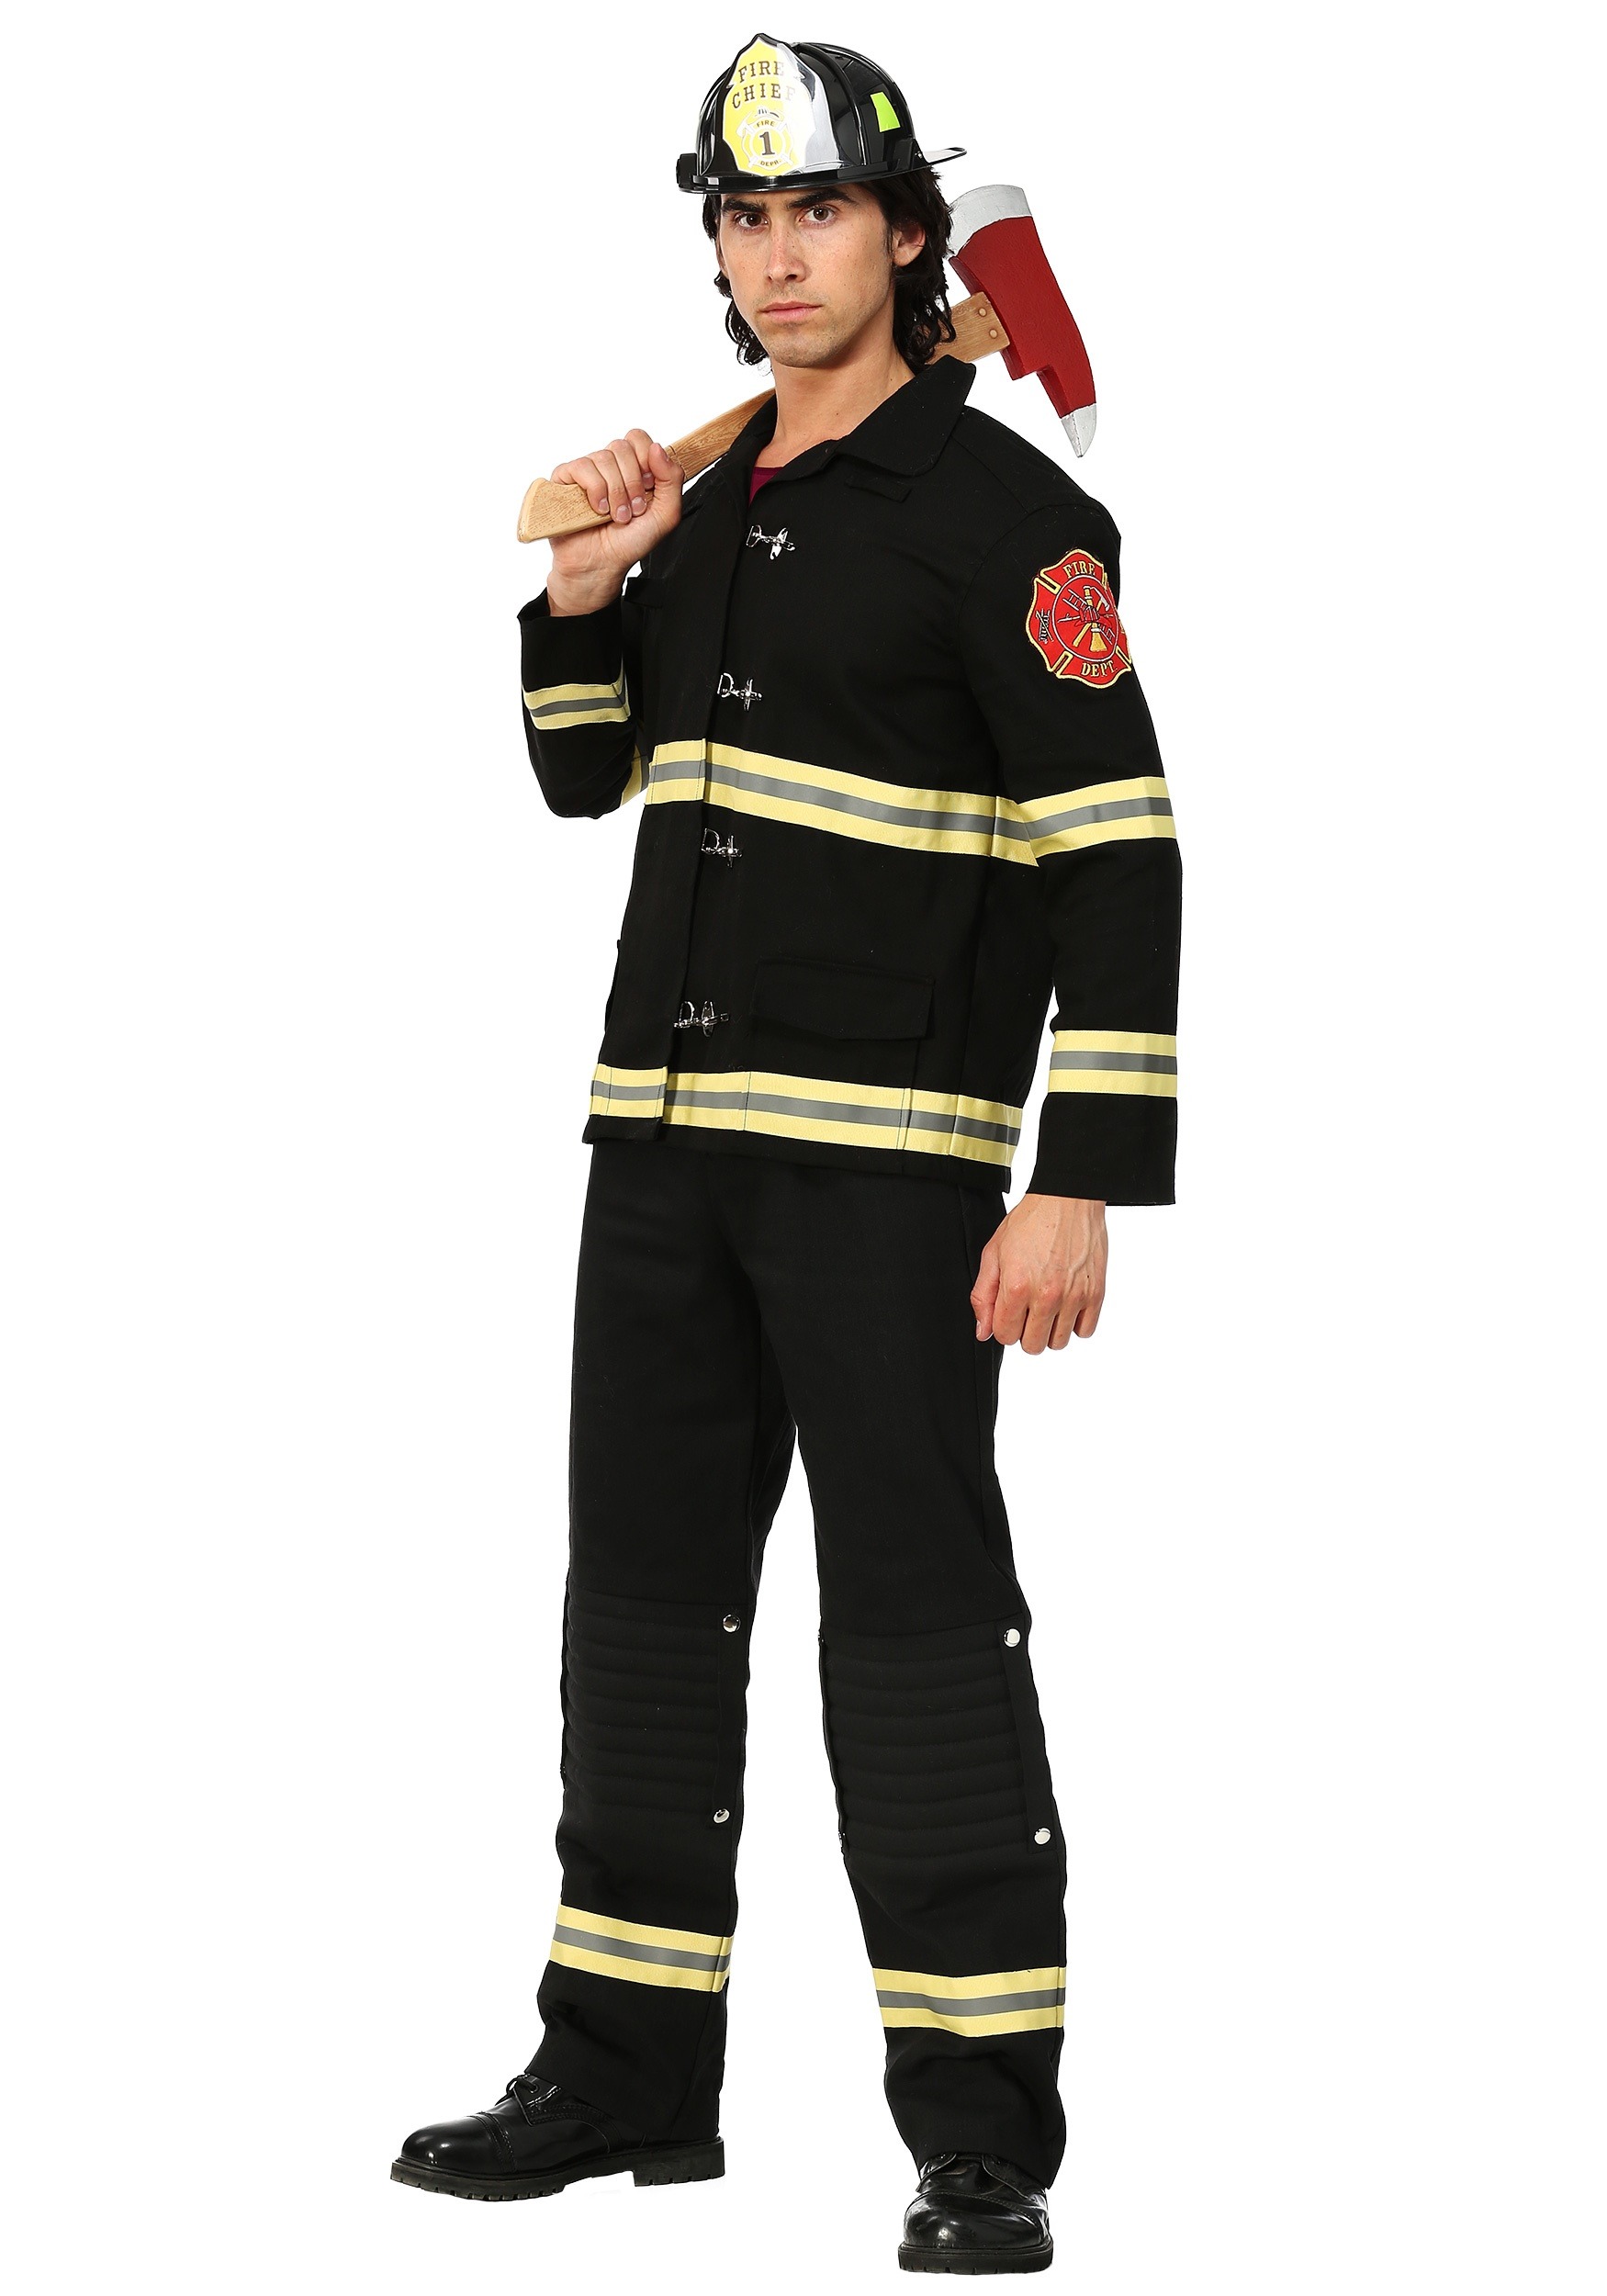 Black Uniform Firefighter Costume for Men